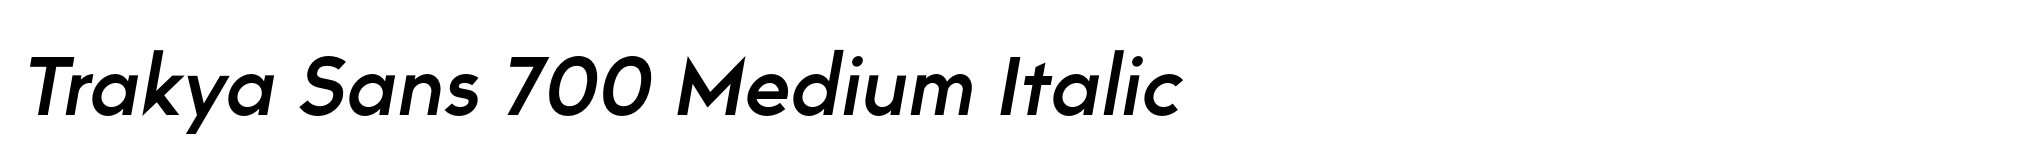 Trakya Sans 700 Medium Italic image